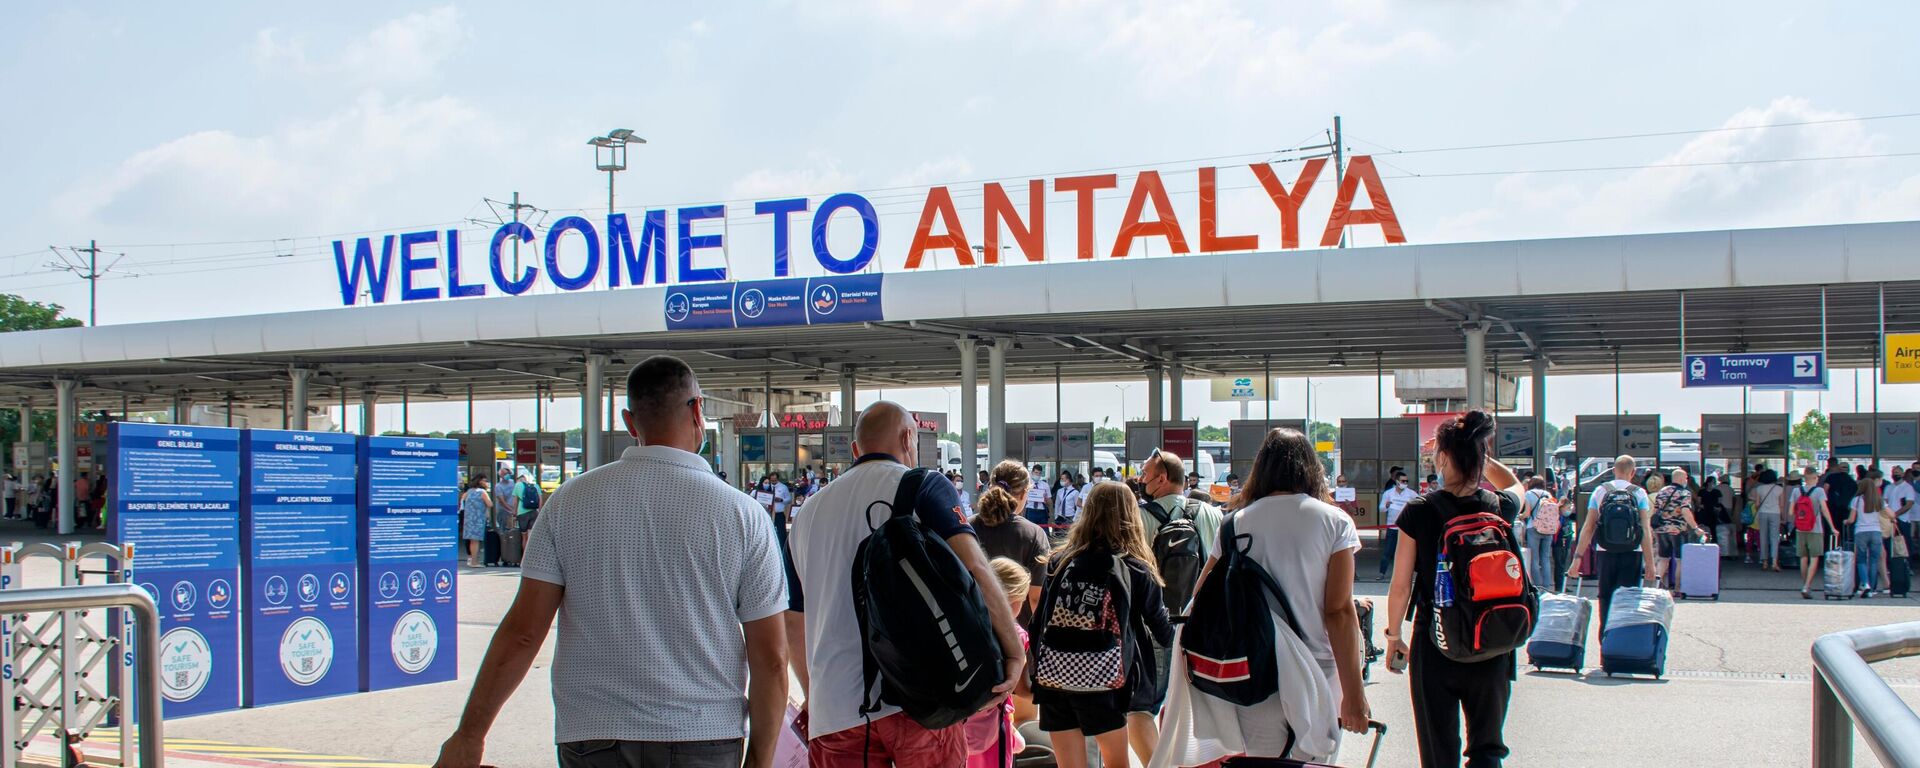 Antalya'da turizm verilerindeki artış devam ediyor. Antalya Valiliği İl Kültür ve Turizm Müdürlüğü'nden alınan verilere göre 1 Ocak-30 Nisan arası şehri hava yoluyla ziyaret eden turist sayısı 2021 yılına göre yüzde 162 arttı. - Sputnik Türkiye, 1920, 29.07.2022